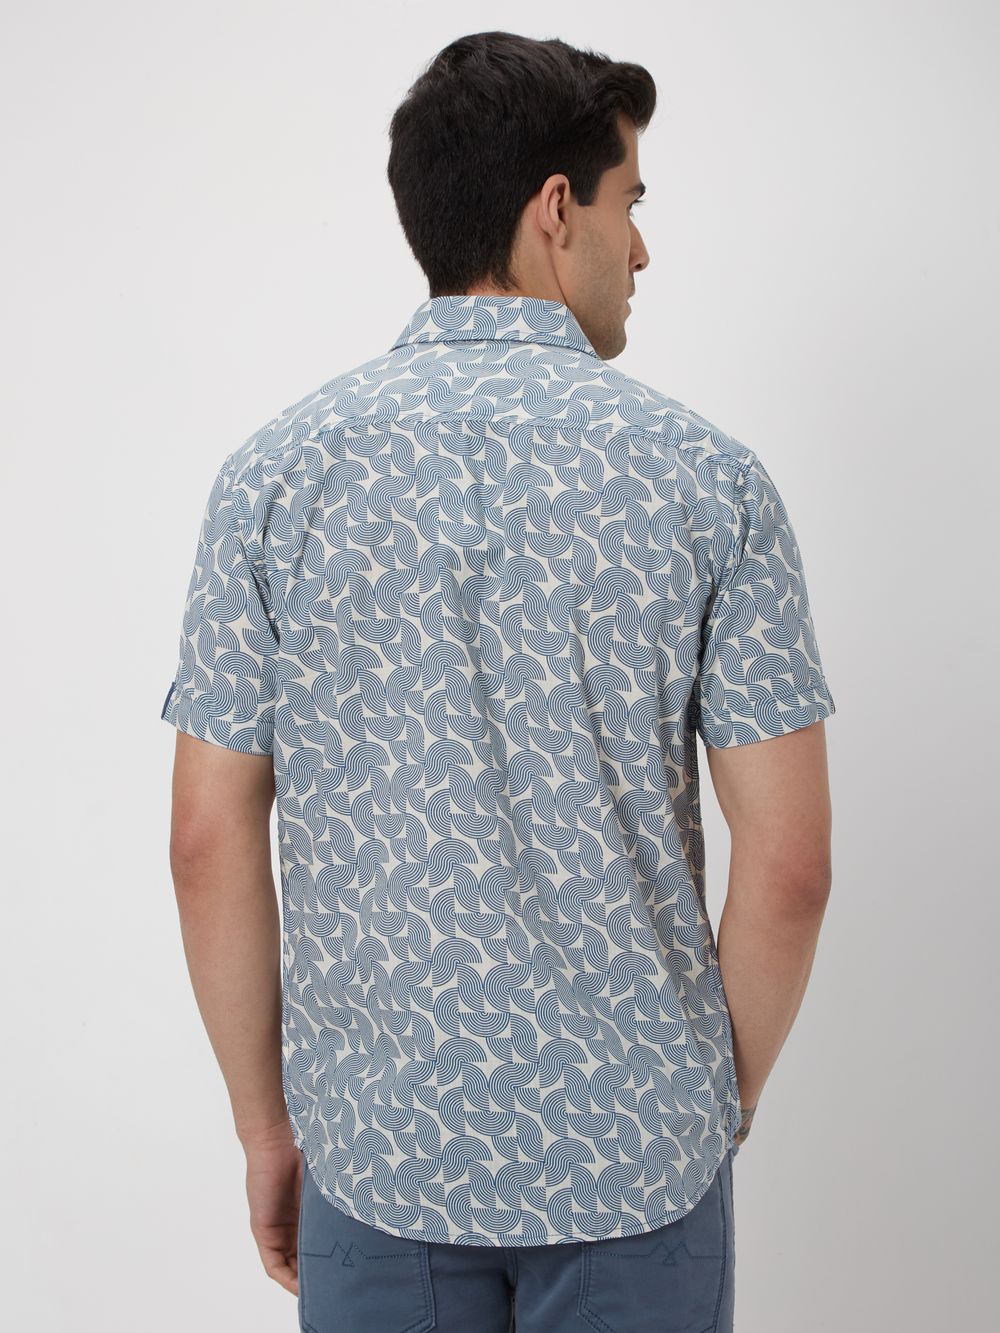 Blue & Off White Abstract Print Slub Shirt